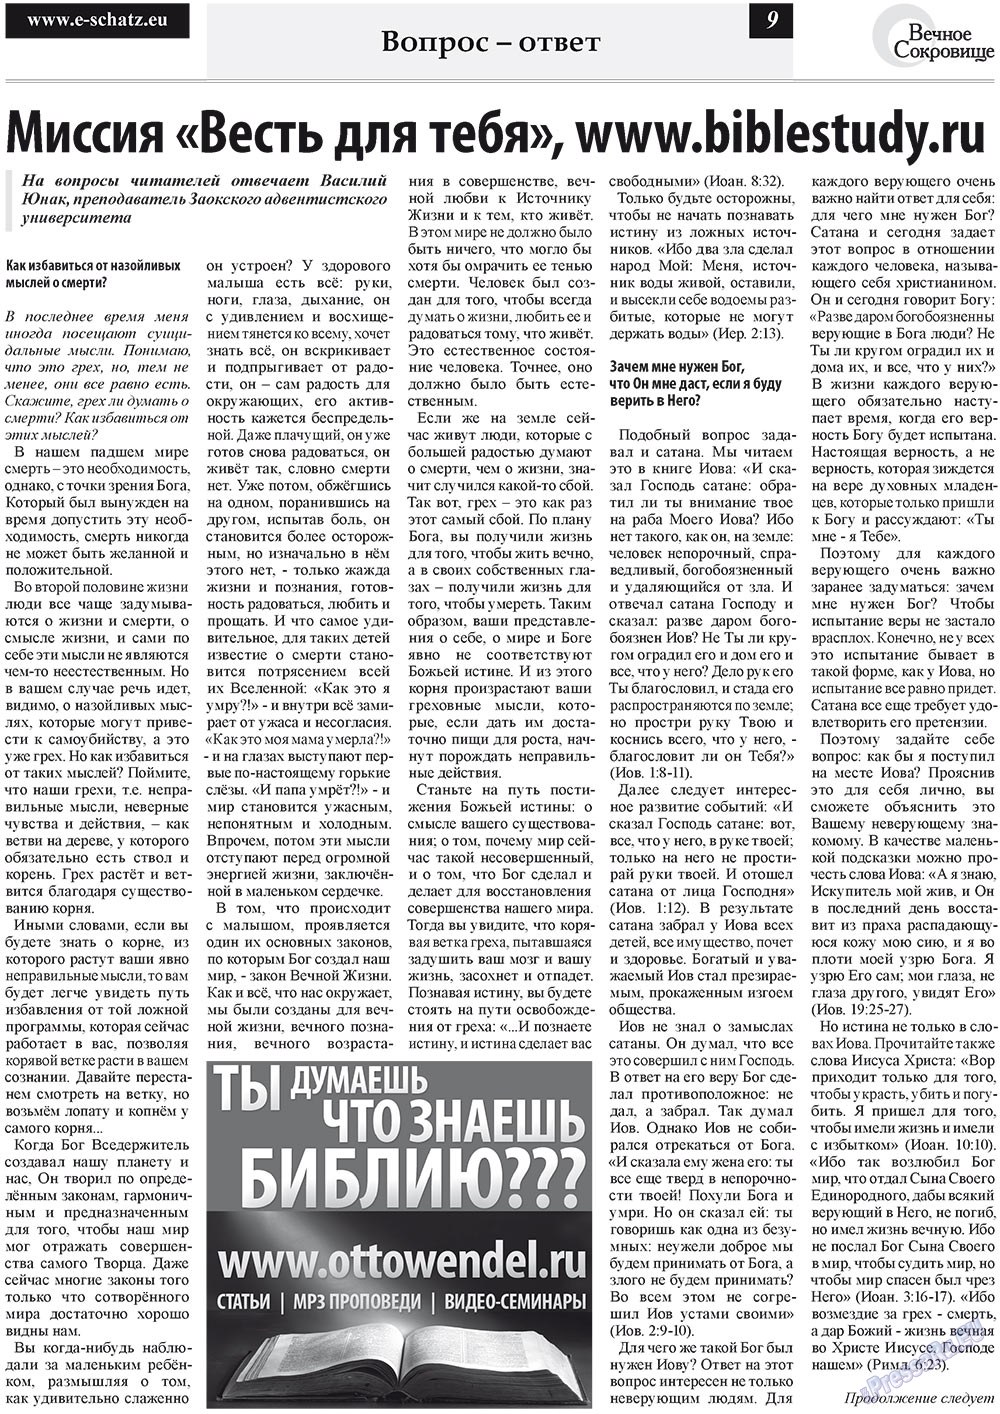 Вечное сокровище, газета. 2011 №5 стр.9